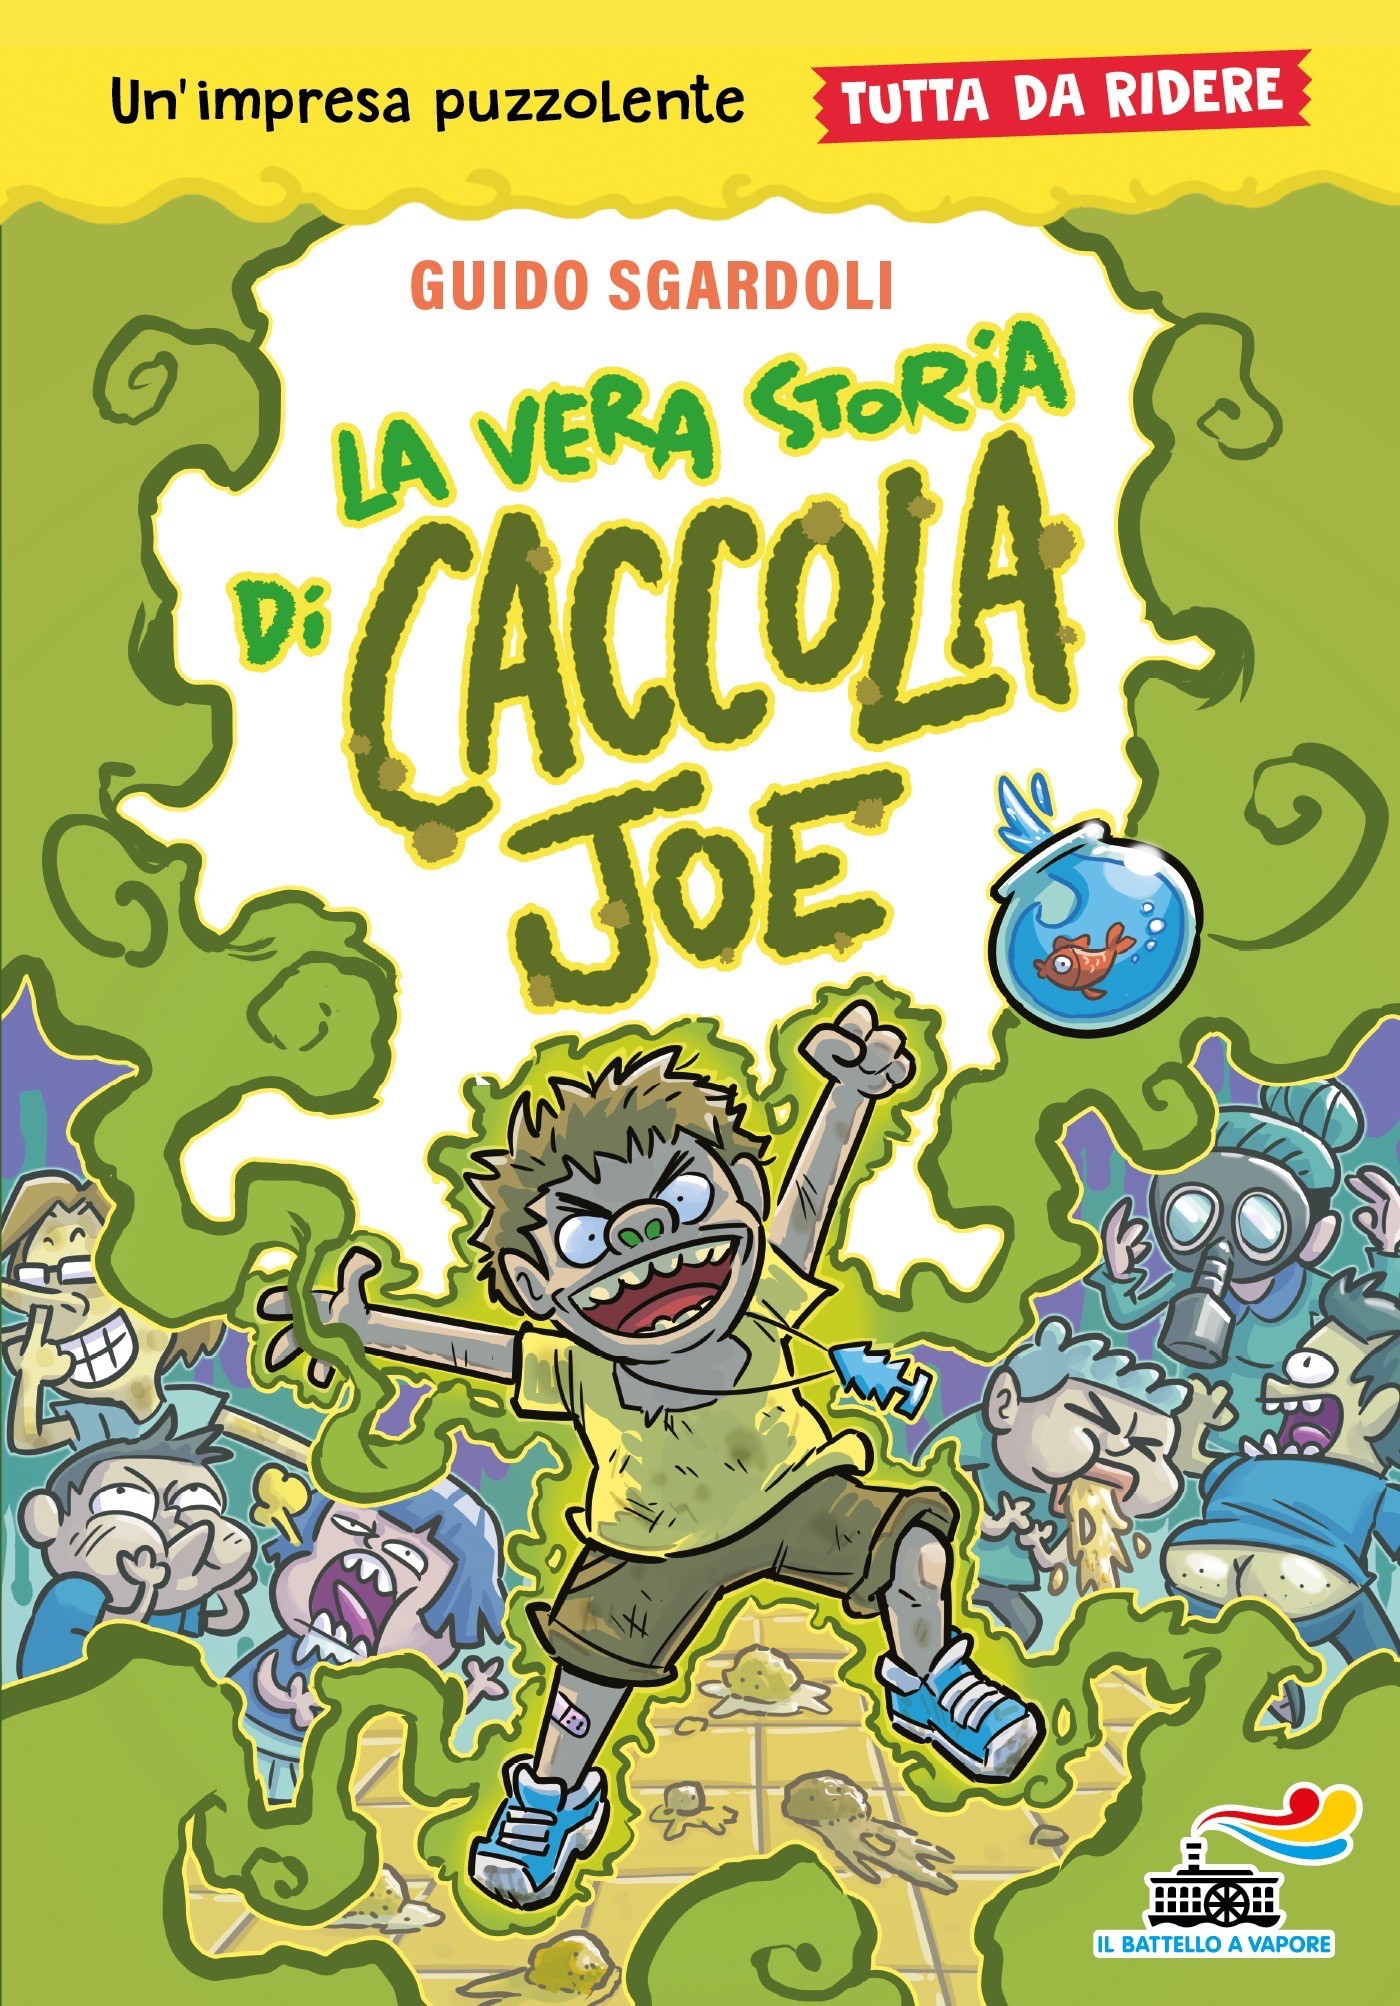 La vera storia di Caccola Joe - Tutto da ridere - Librerie.coop